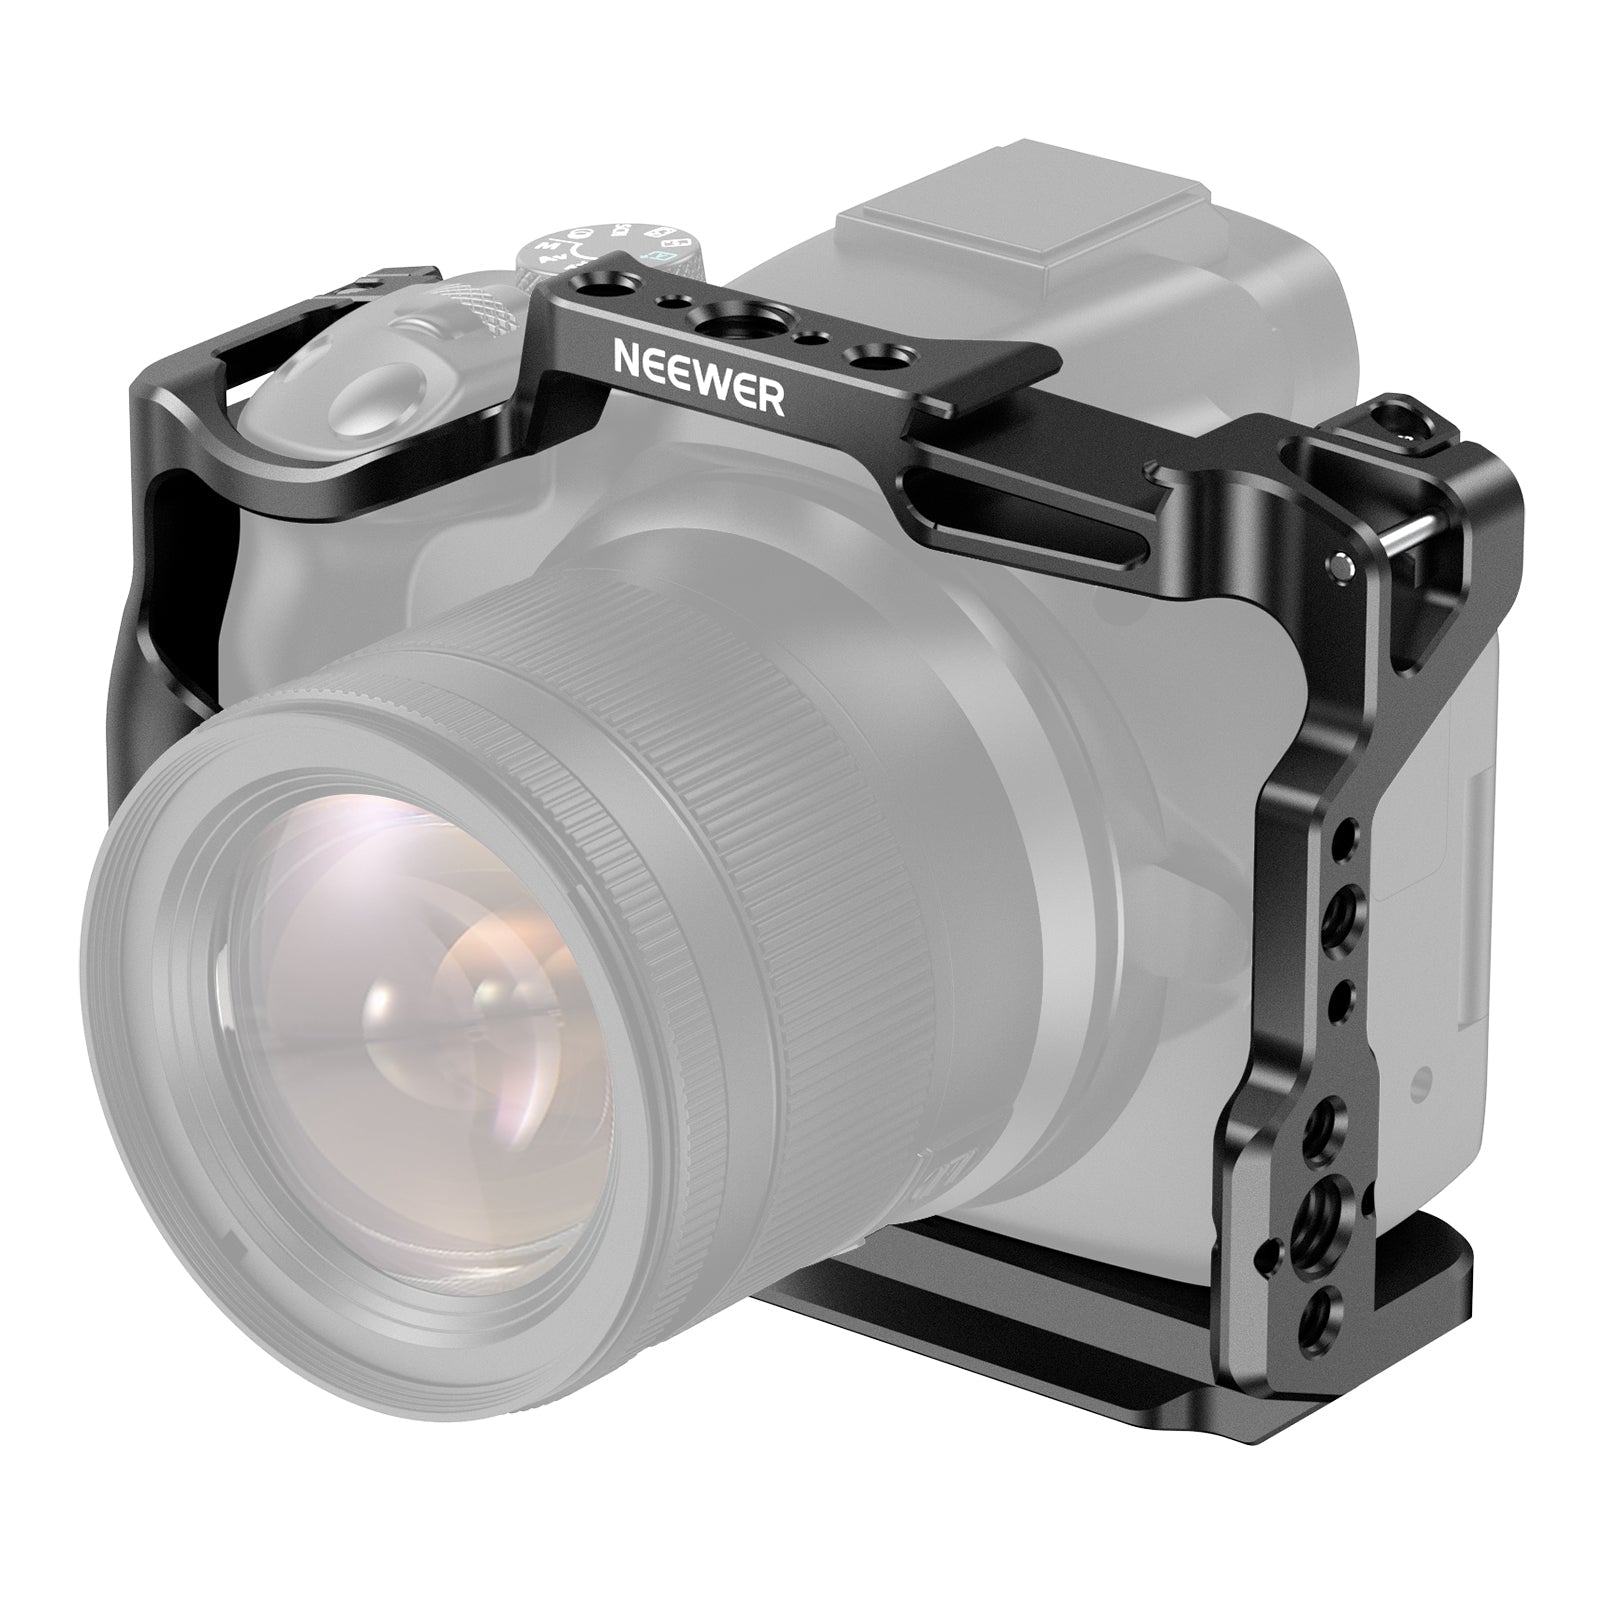 Support pour Action Caméra GoPro avec Socle Magnétique